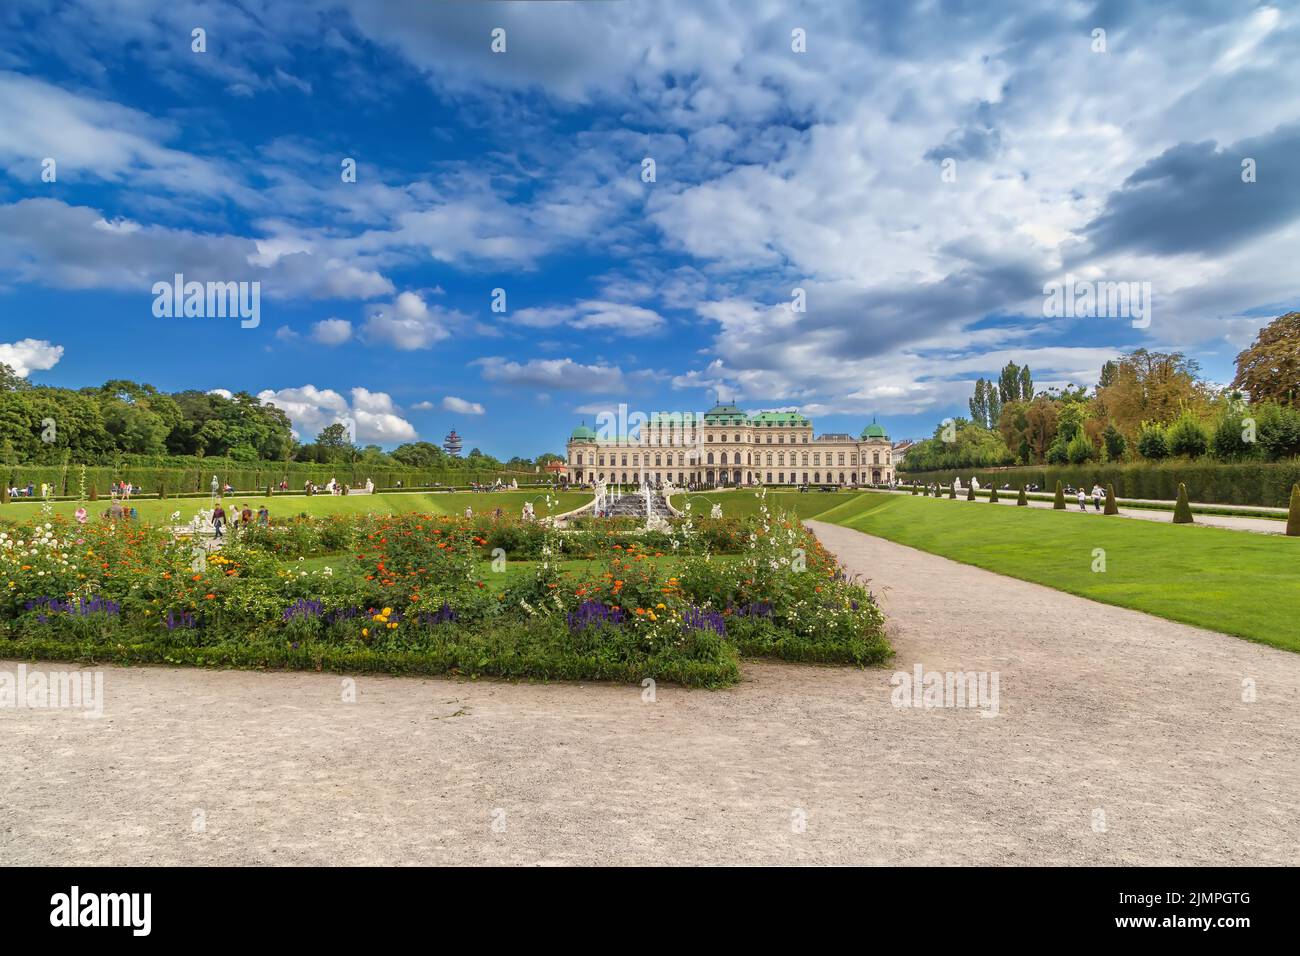 Belvedere garden, Vienna Stock Photo